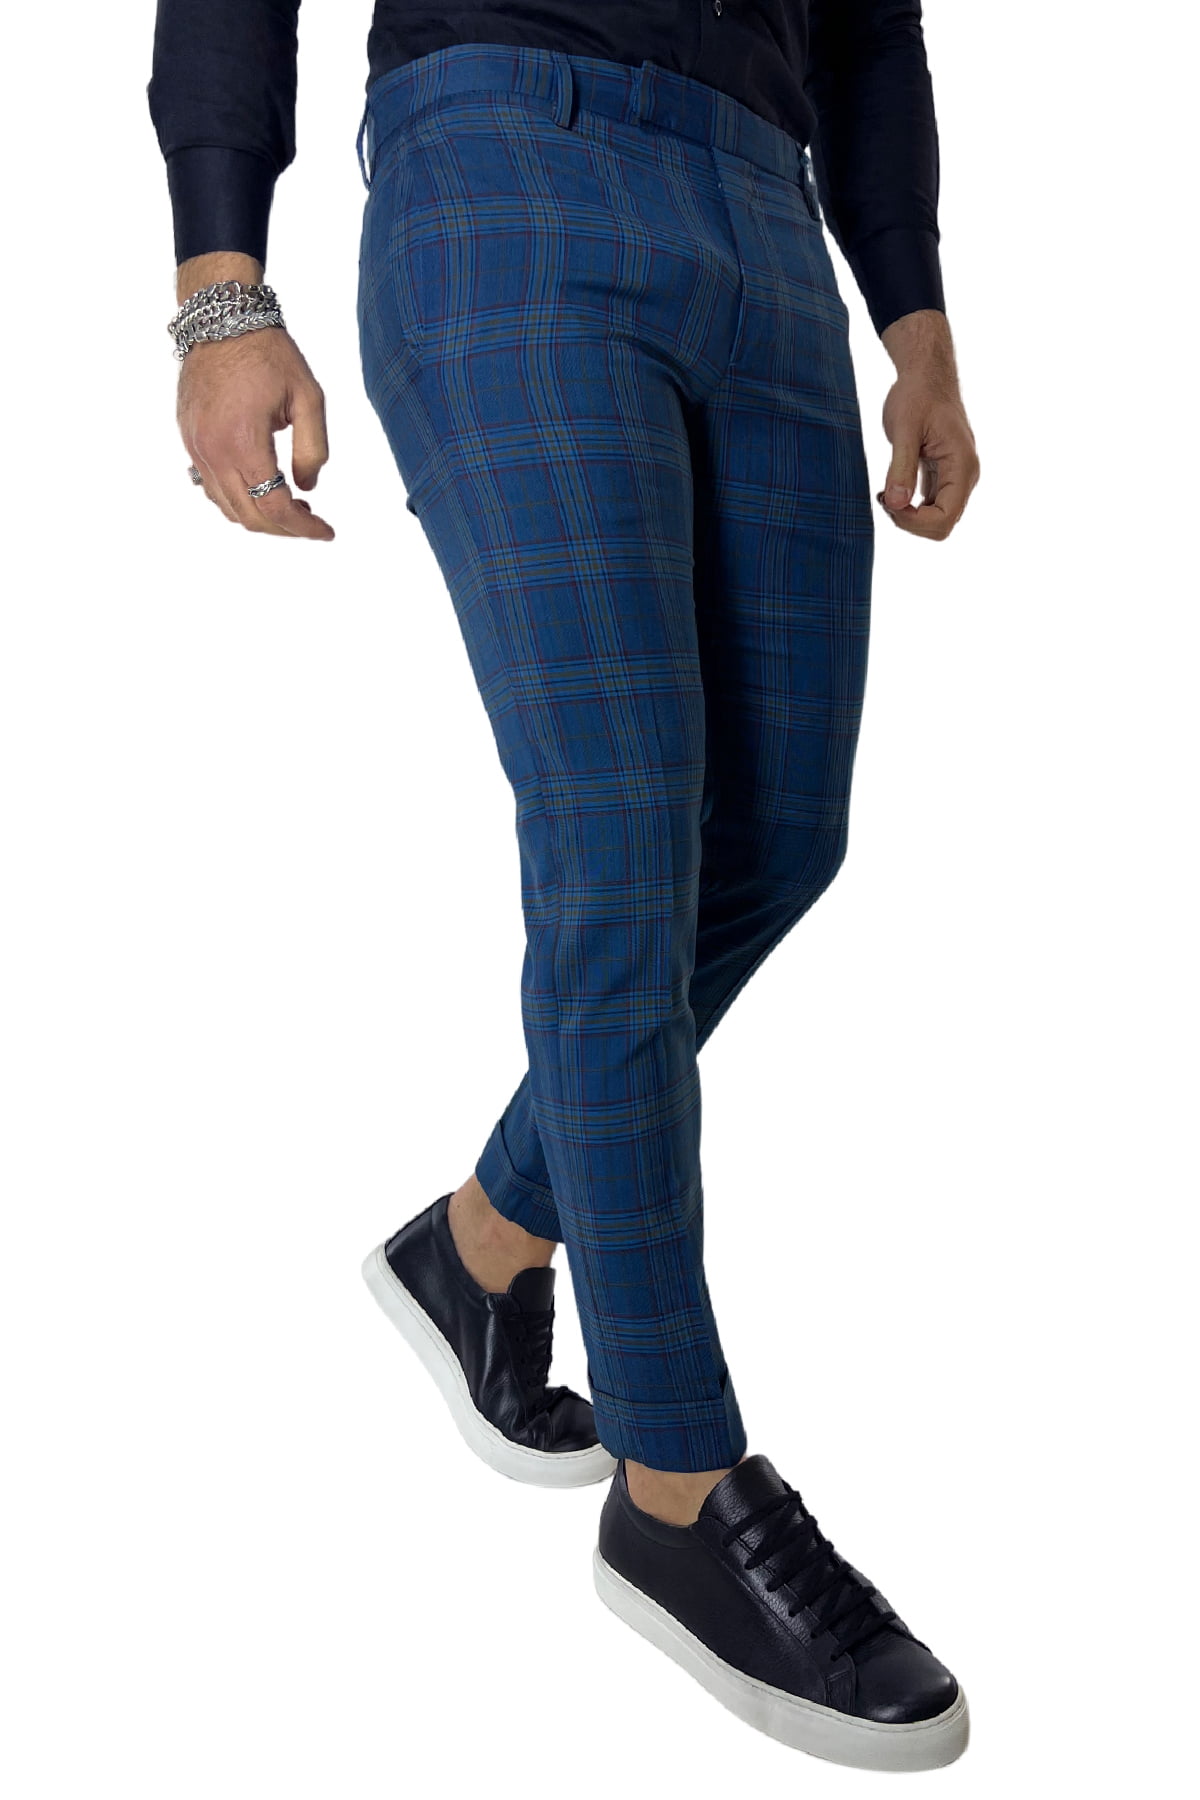 Pantalone uomo scozzese blu tasca america made in italy